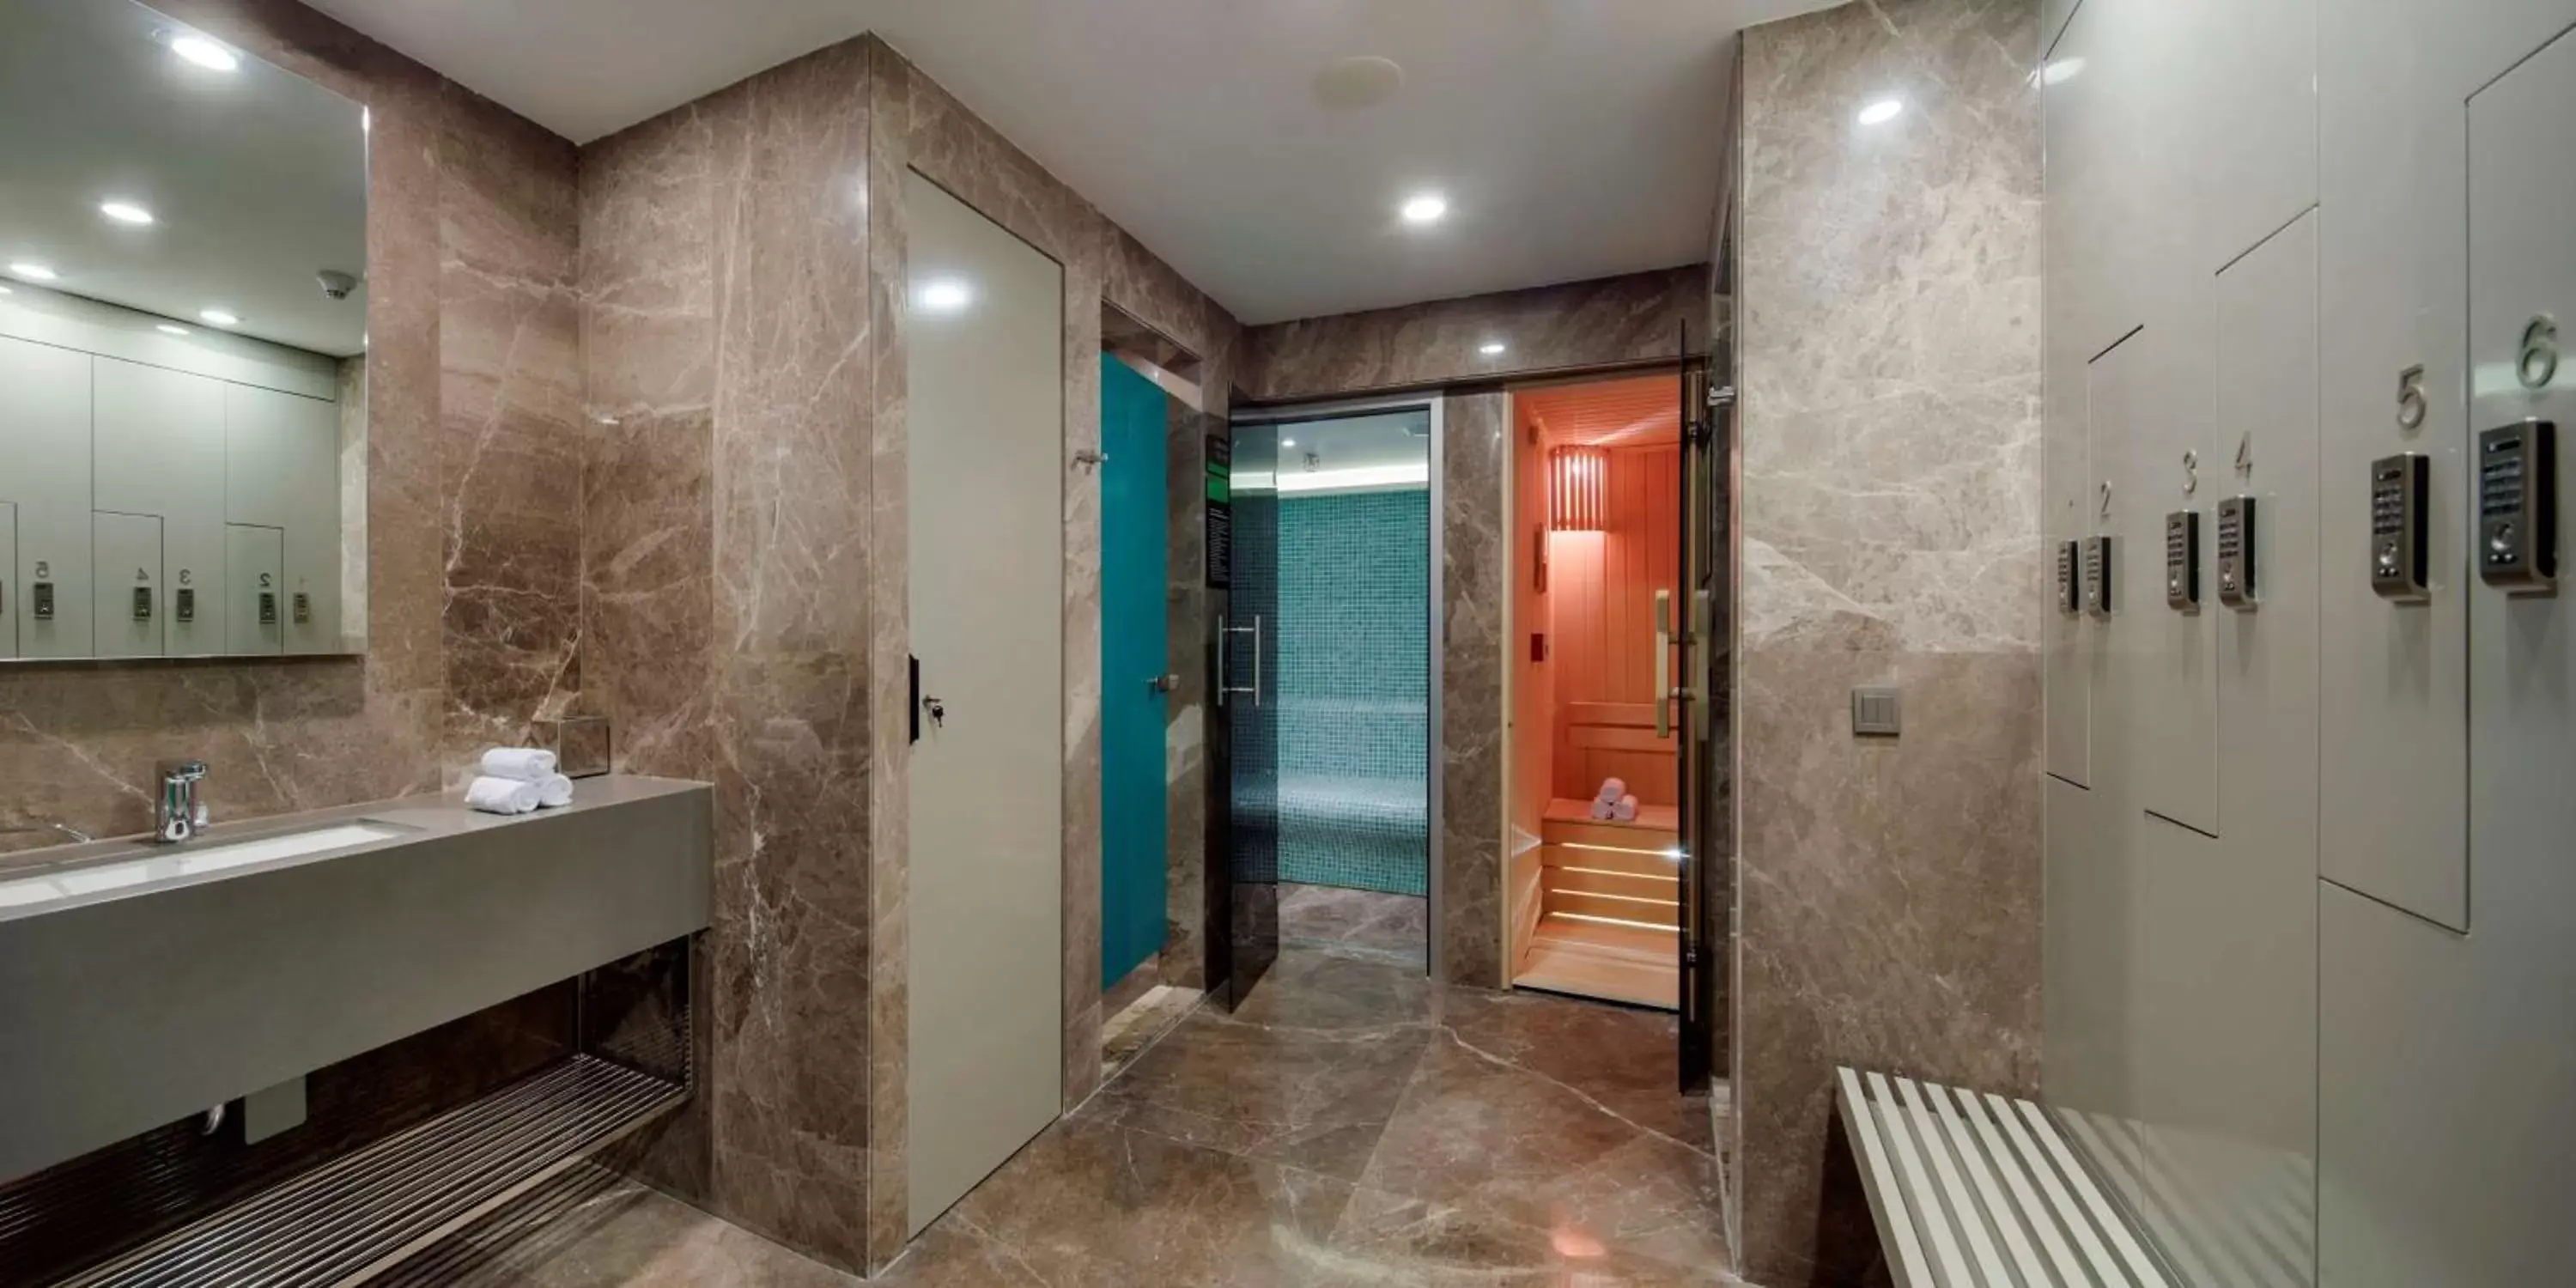 Spa and wellness centre/facilities, Bathroom in Hilton Garden Inn Istanbul Atatürk Airport